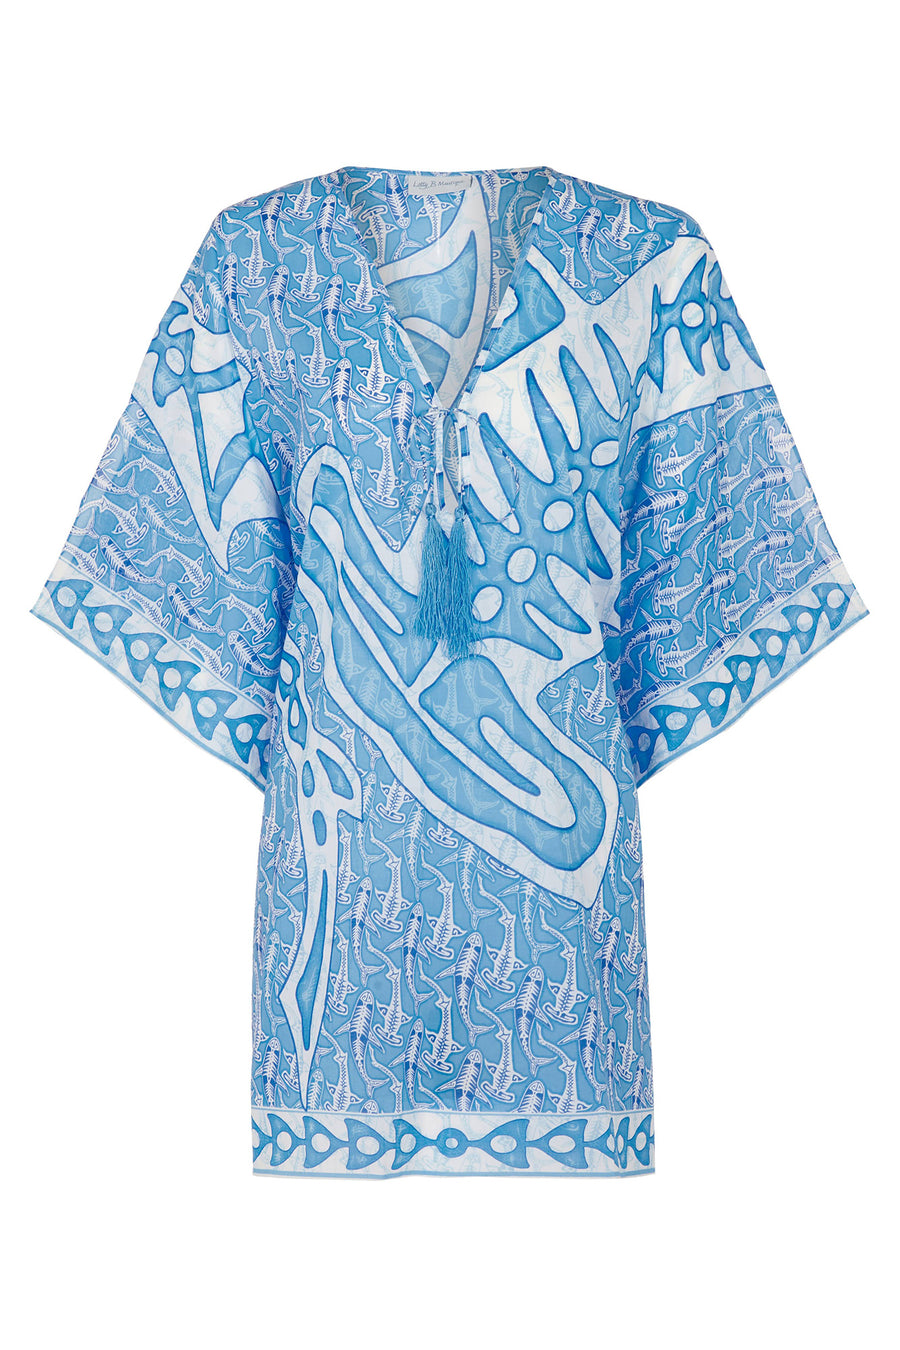 Lotty B Short Kaftan in Cotton (Shark, Blue) Mustique beach style